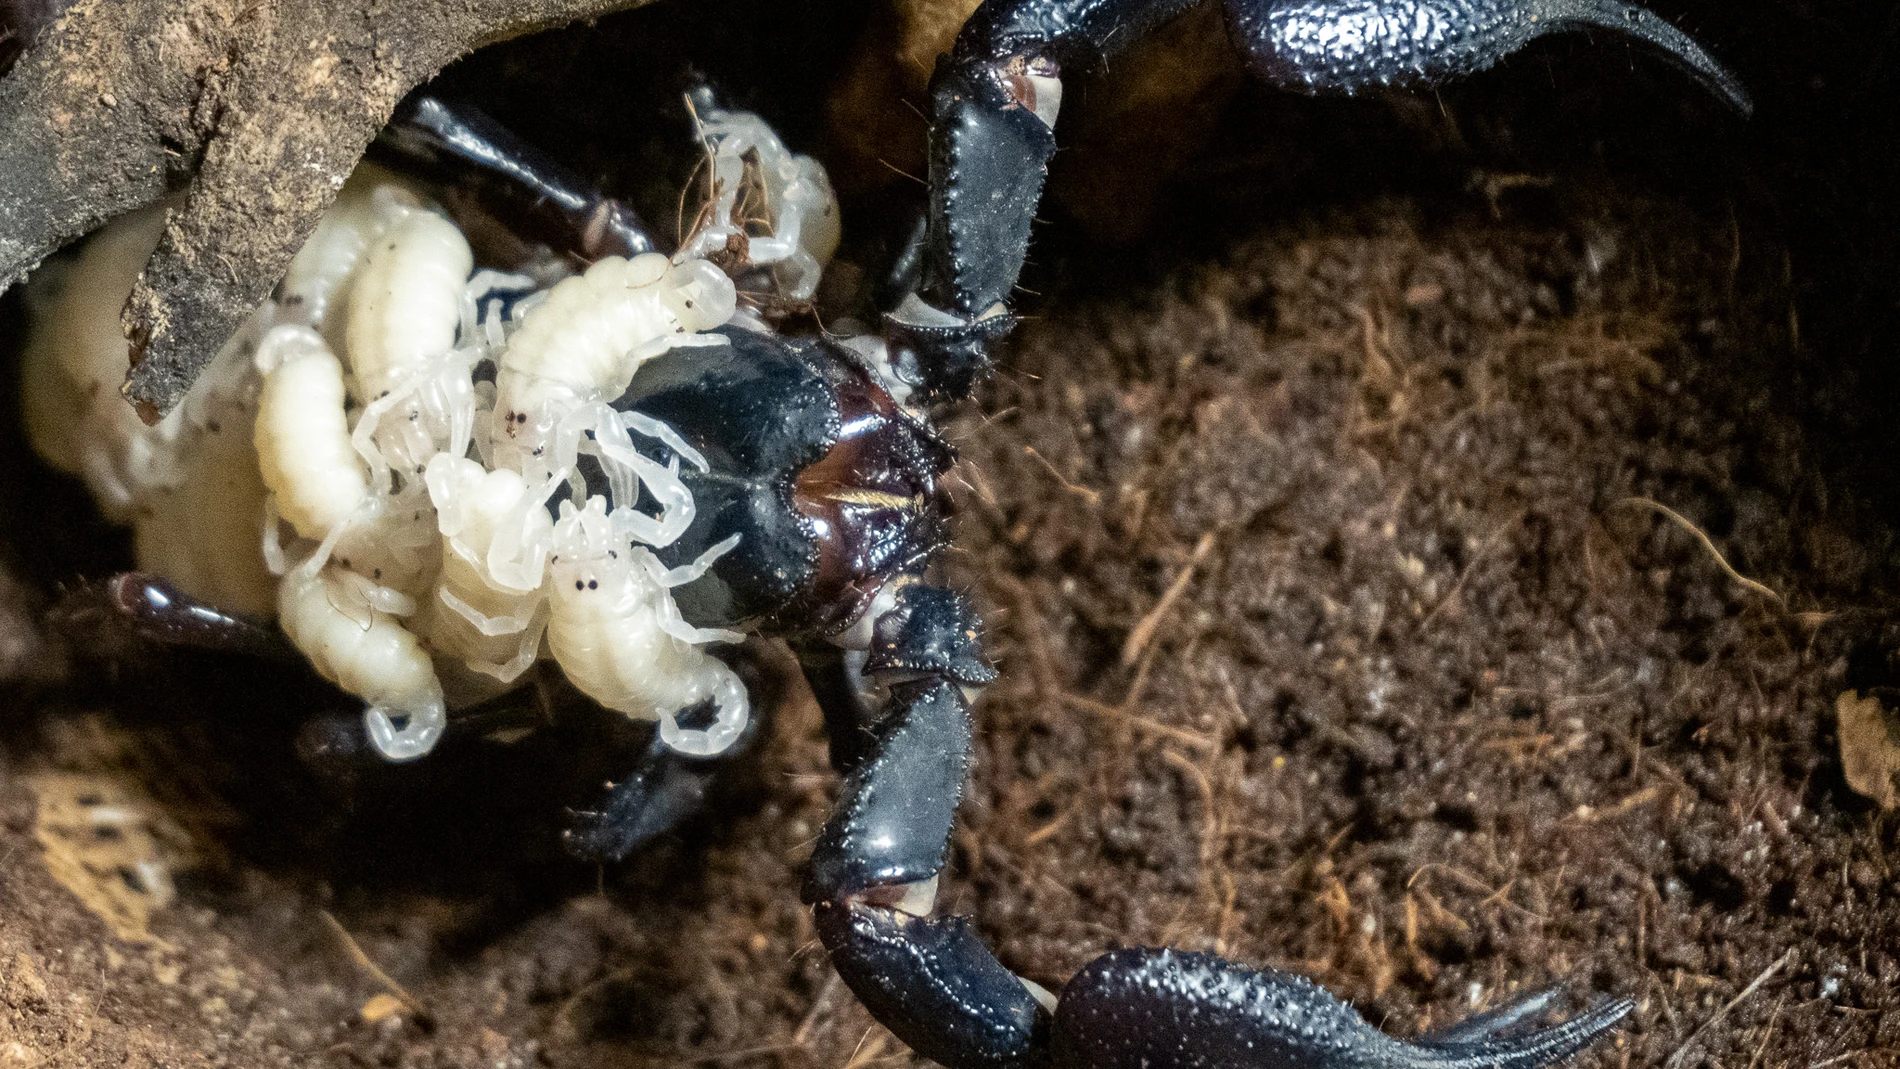 La madre escorpión se ha mostrado muy protectora con sus crías